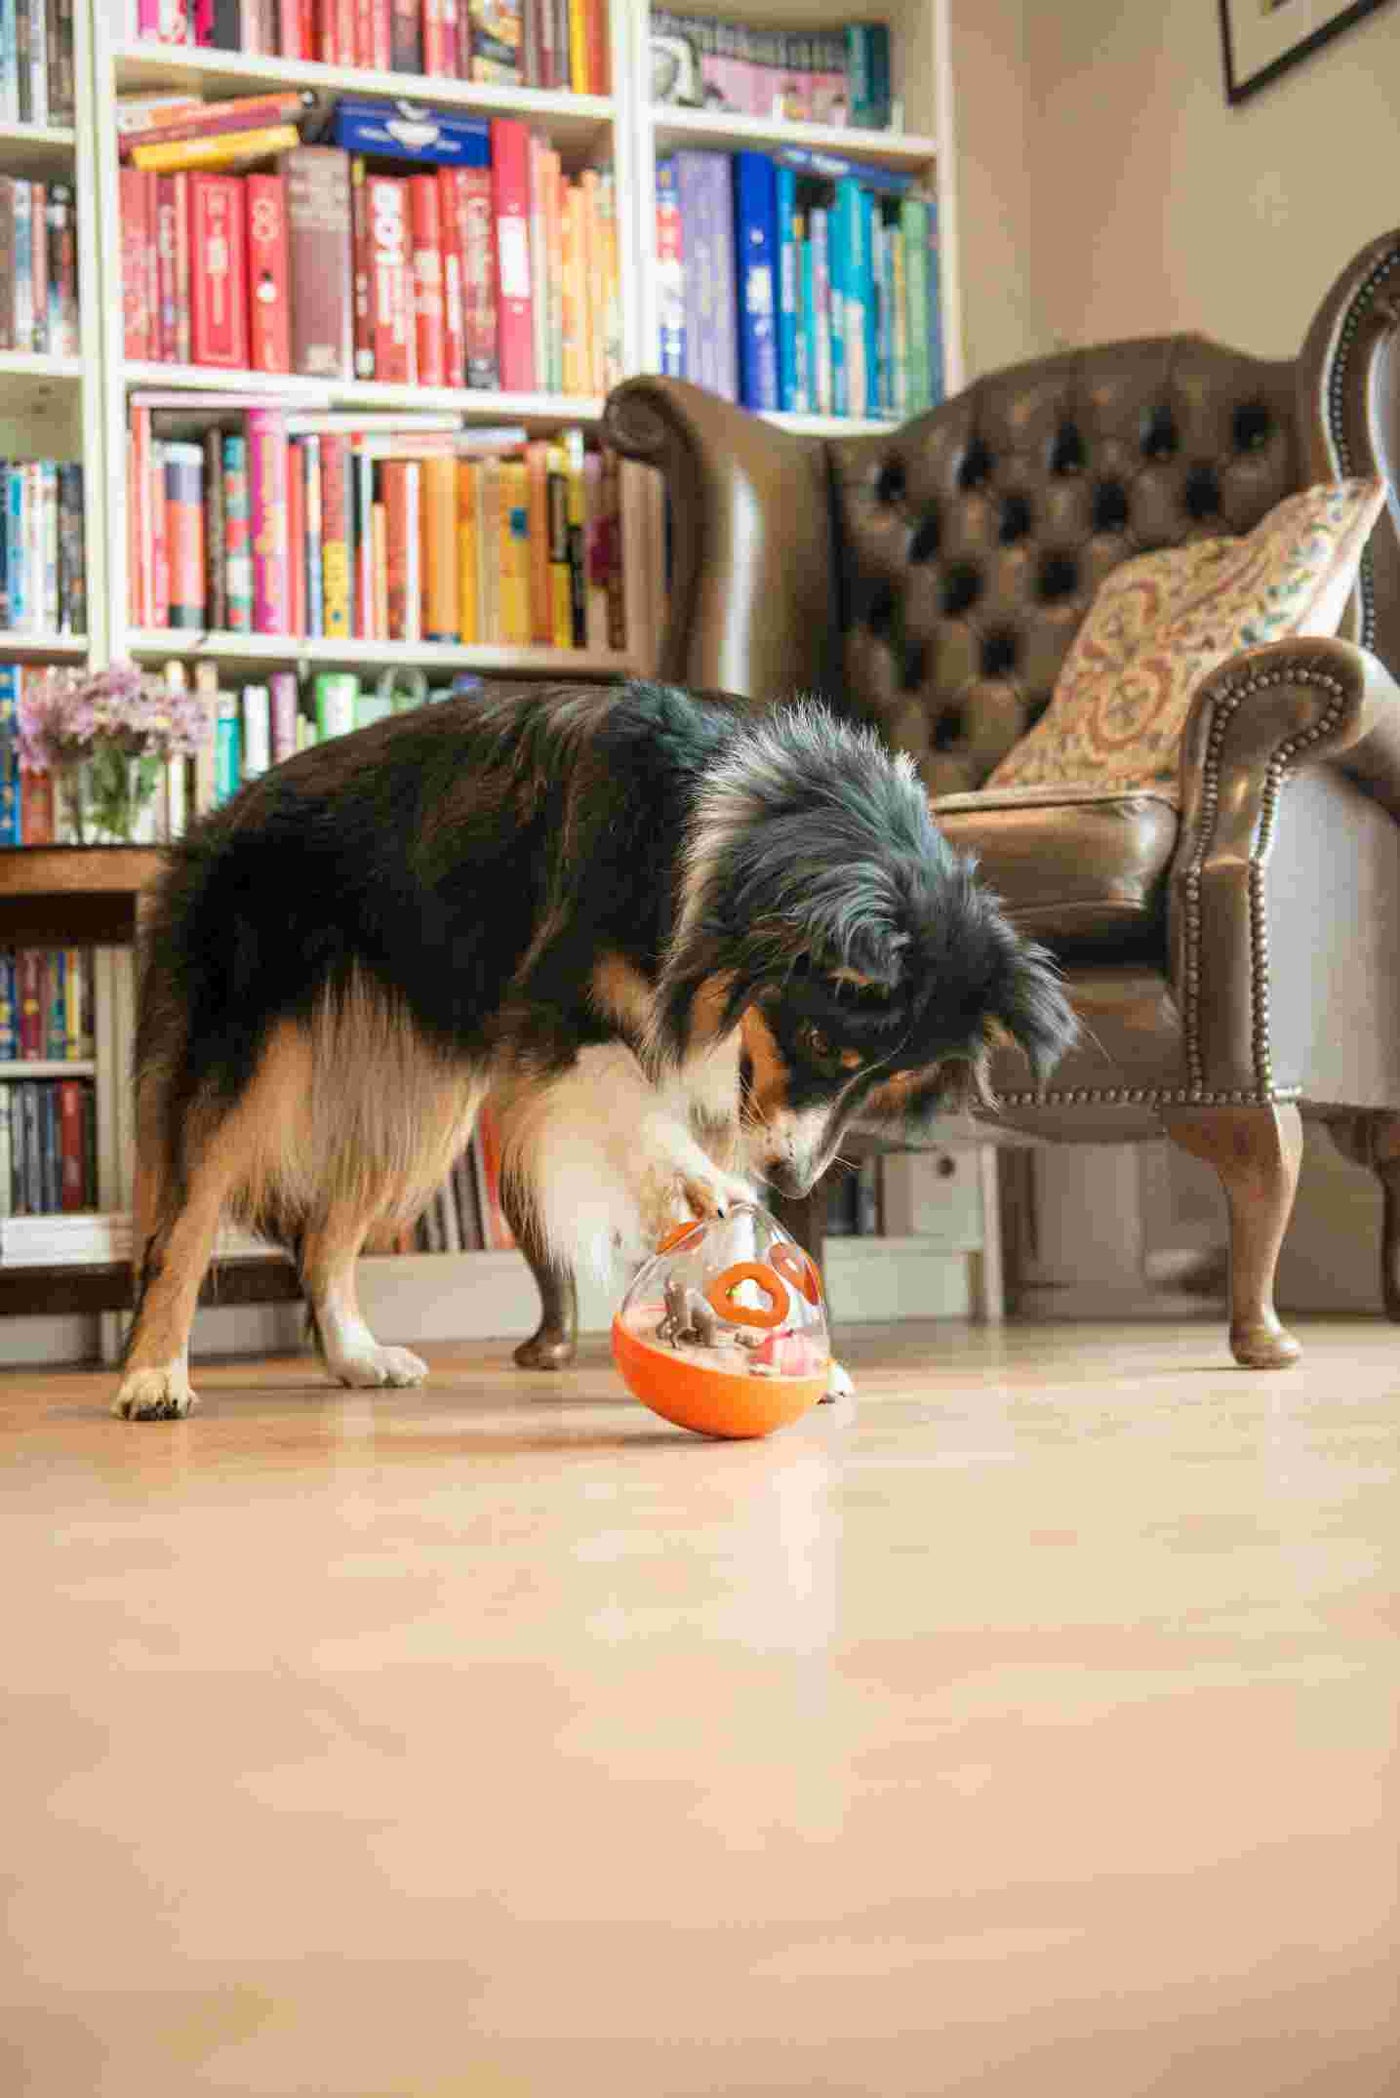 狗狗益智玩具 - 不倒翁漏食球